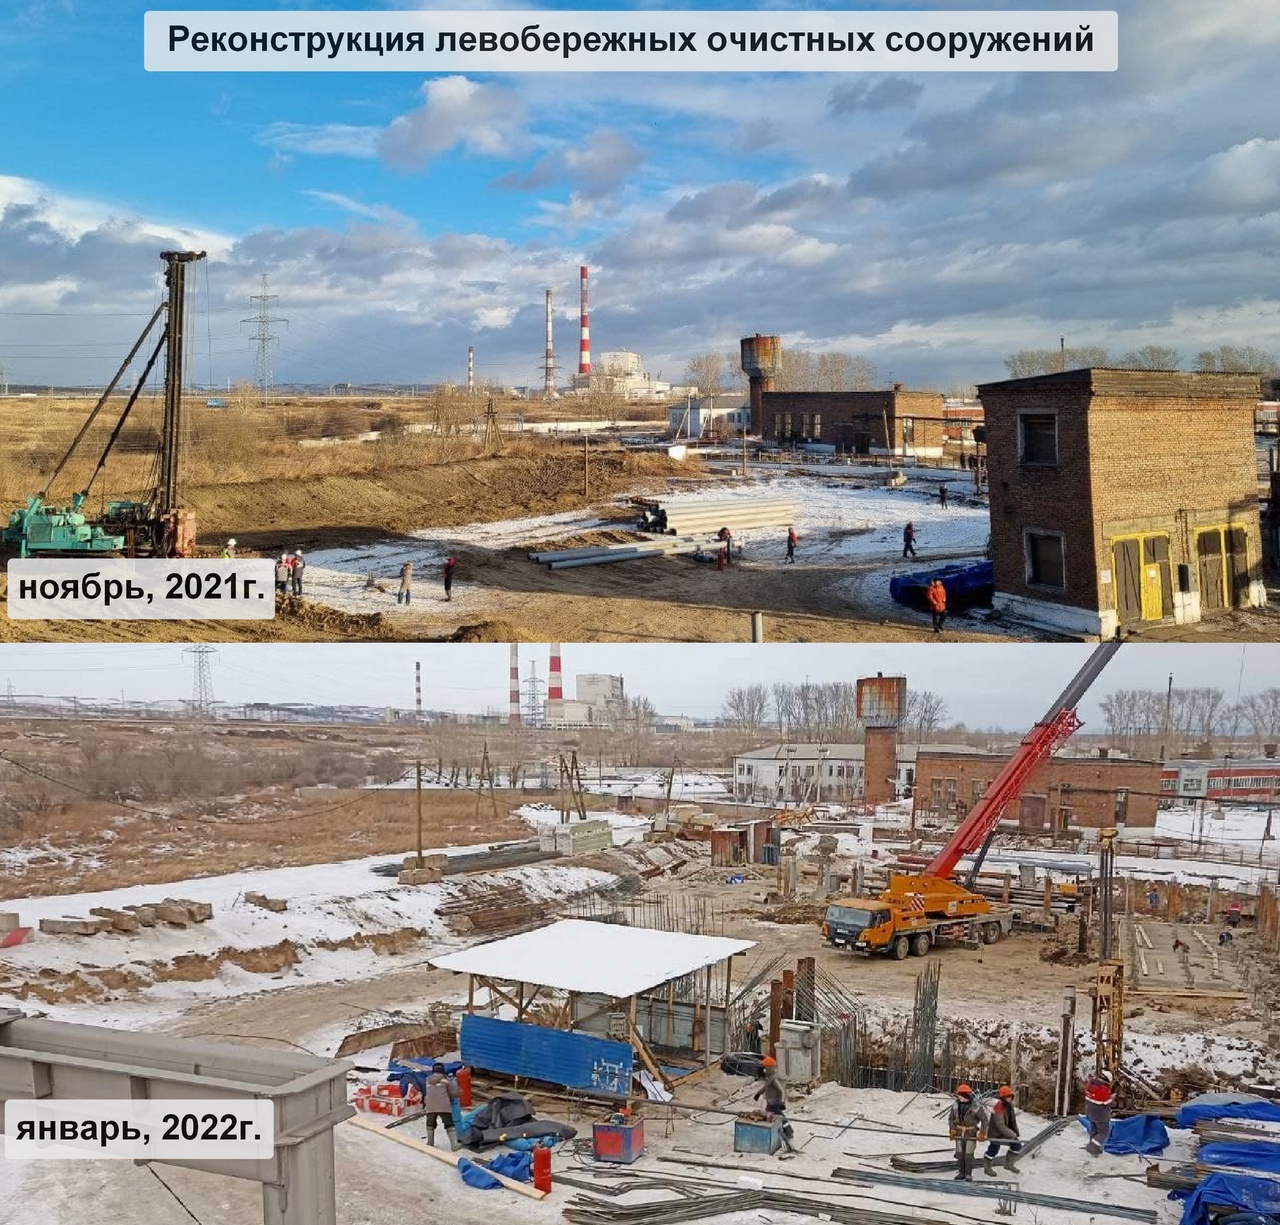 В Красноярске реализуются мероприятия по реконструкции левобережных очистных сооружений